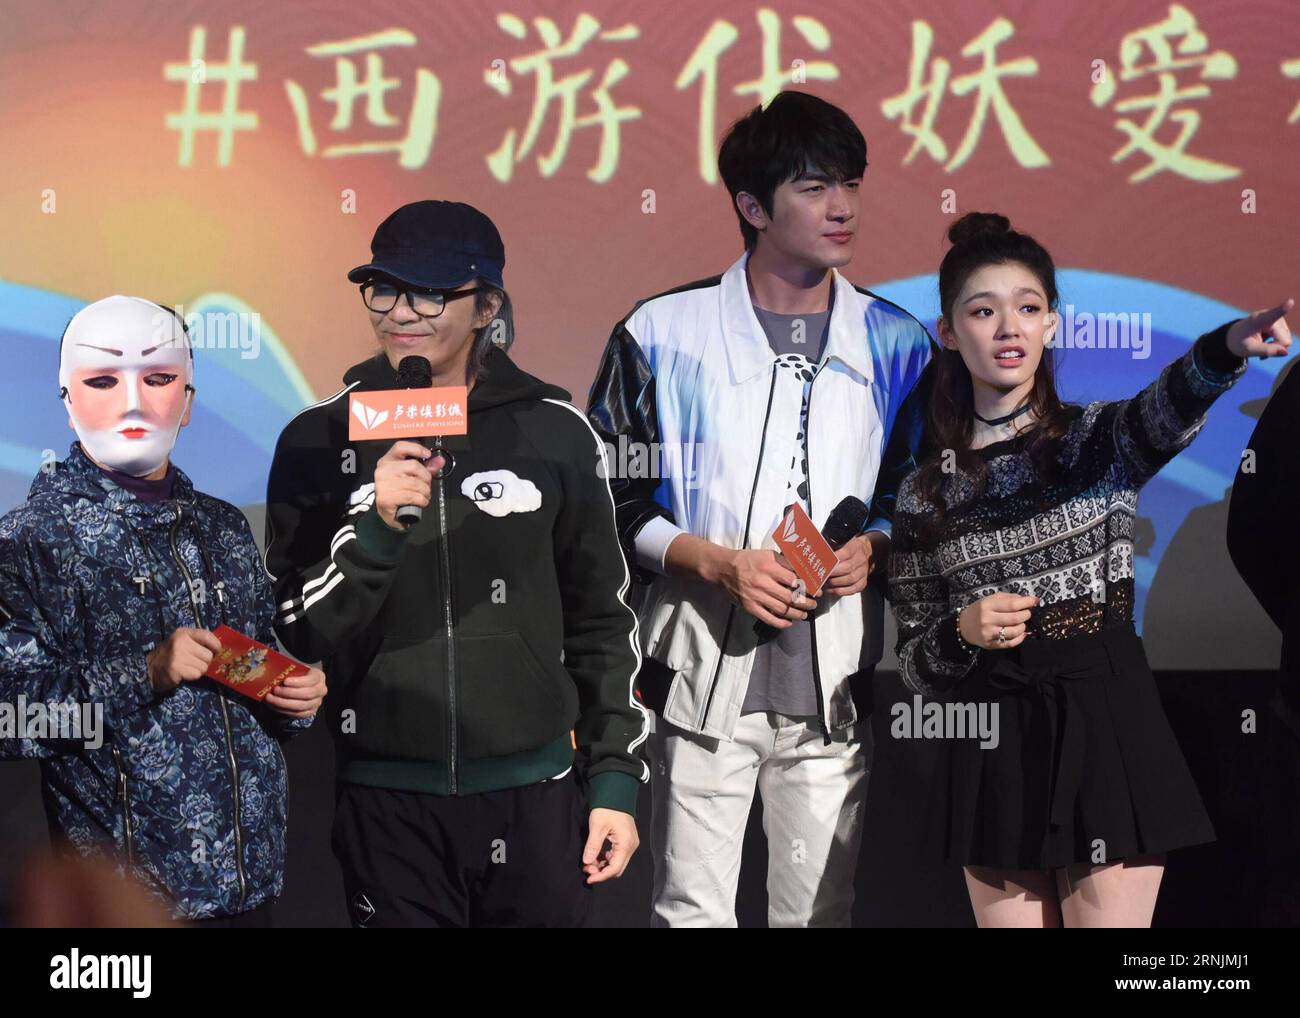 (170205) -- HANGZHOU, 4. Februar 2017 -- Hong Kong Comedian Stephen Chow (2. L), Schauspieler Lin Gengxin (2. R) und Jelly Lin (1. R) treffen Fans und fördern ihren Film Journey to the West: The Demons Strike Back in Hangzhou, Hauptstadt der ostchinesischen Provinz Zhejiang, 4. Februar 2017. Der Film, produziert von Stephen Chow und unter der Regie von Hark Tsui, nahm 1,153 Milliarden Yuan (168 Millionen US-Dollar) während des siebentägigen Neujahrsfestes am Mond, was die Feiertagskasse überstieg. ) (Ry) CHINA-HANGZHOU-STEPHEN CHOW-MOVIE (CN) LongxWei PUBLICATIONxNOTxINxCHN Hangzhou 4. Februar 2017 Hong Kong Comedian Stephen Chow 2 Stockfoto